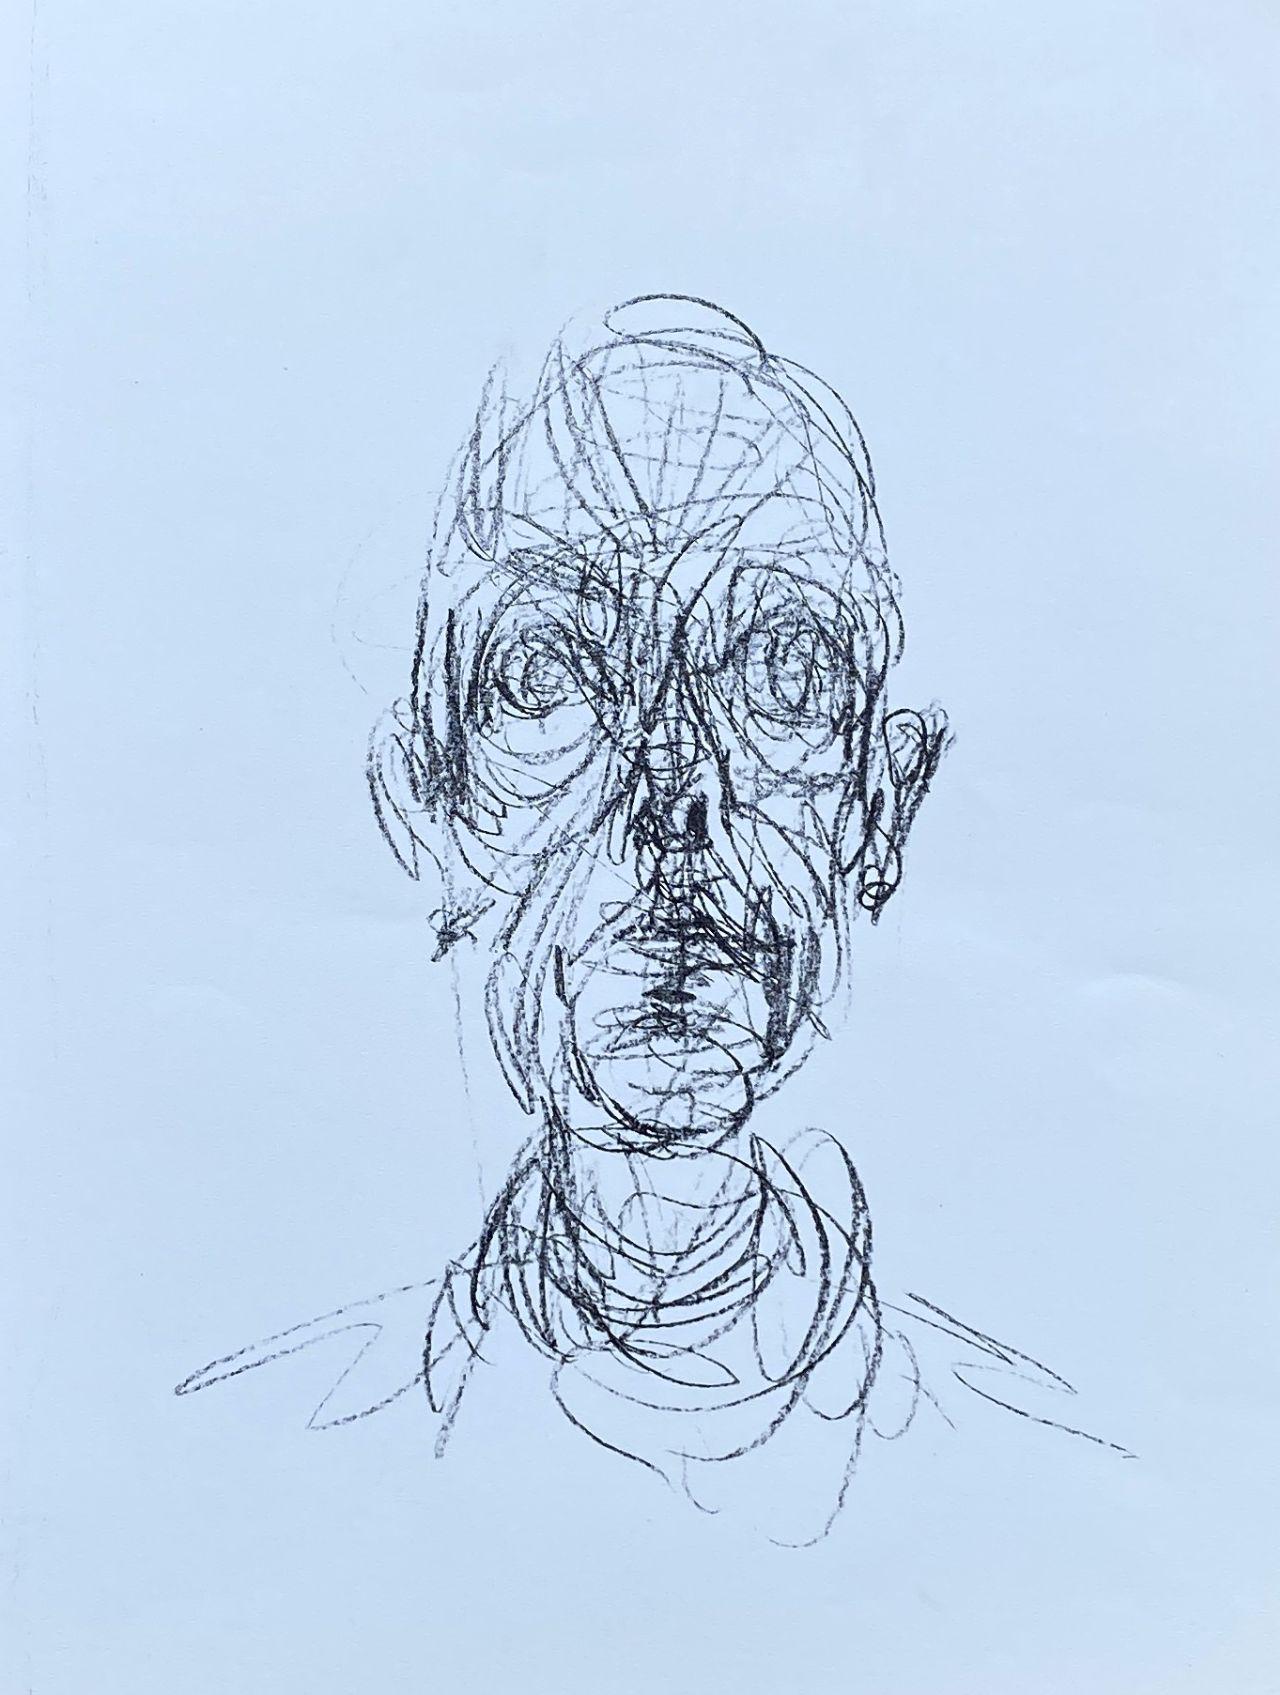 Alberto Giacometti Figurative Print - Head Of Man - Original Lithograph #Lust155